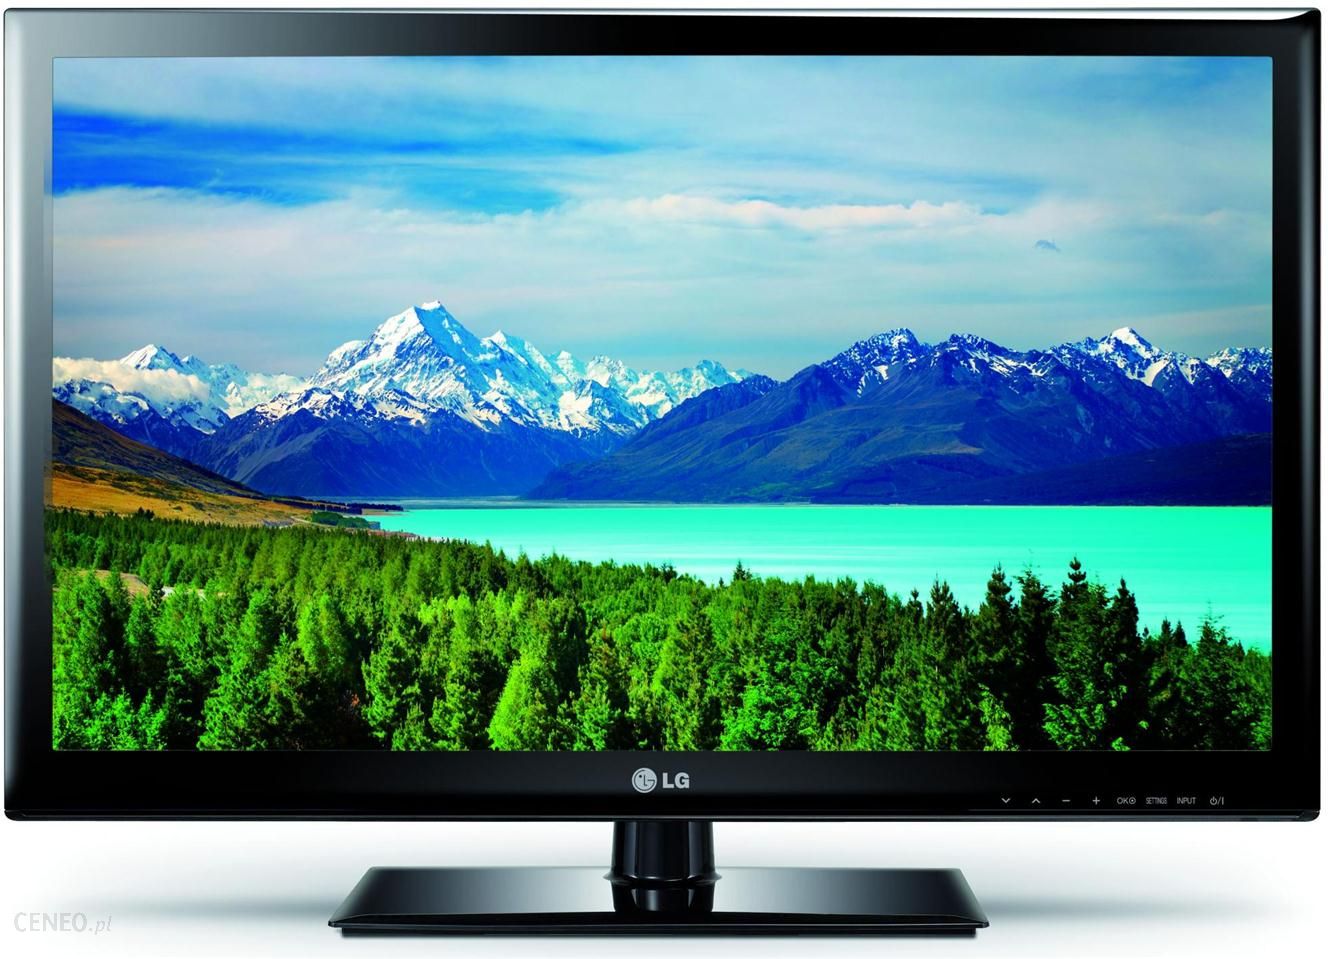 Куплю телевизор 42 дюйма недорого. Телевизор ЛГ 32 дюйма. LG 32lh519u. Телевизор LG 26 дюймов. LG 32ls3400.